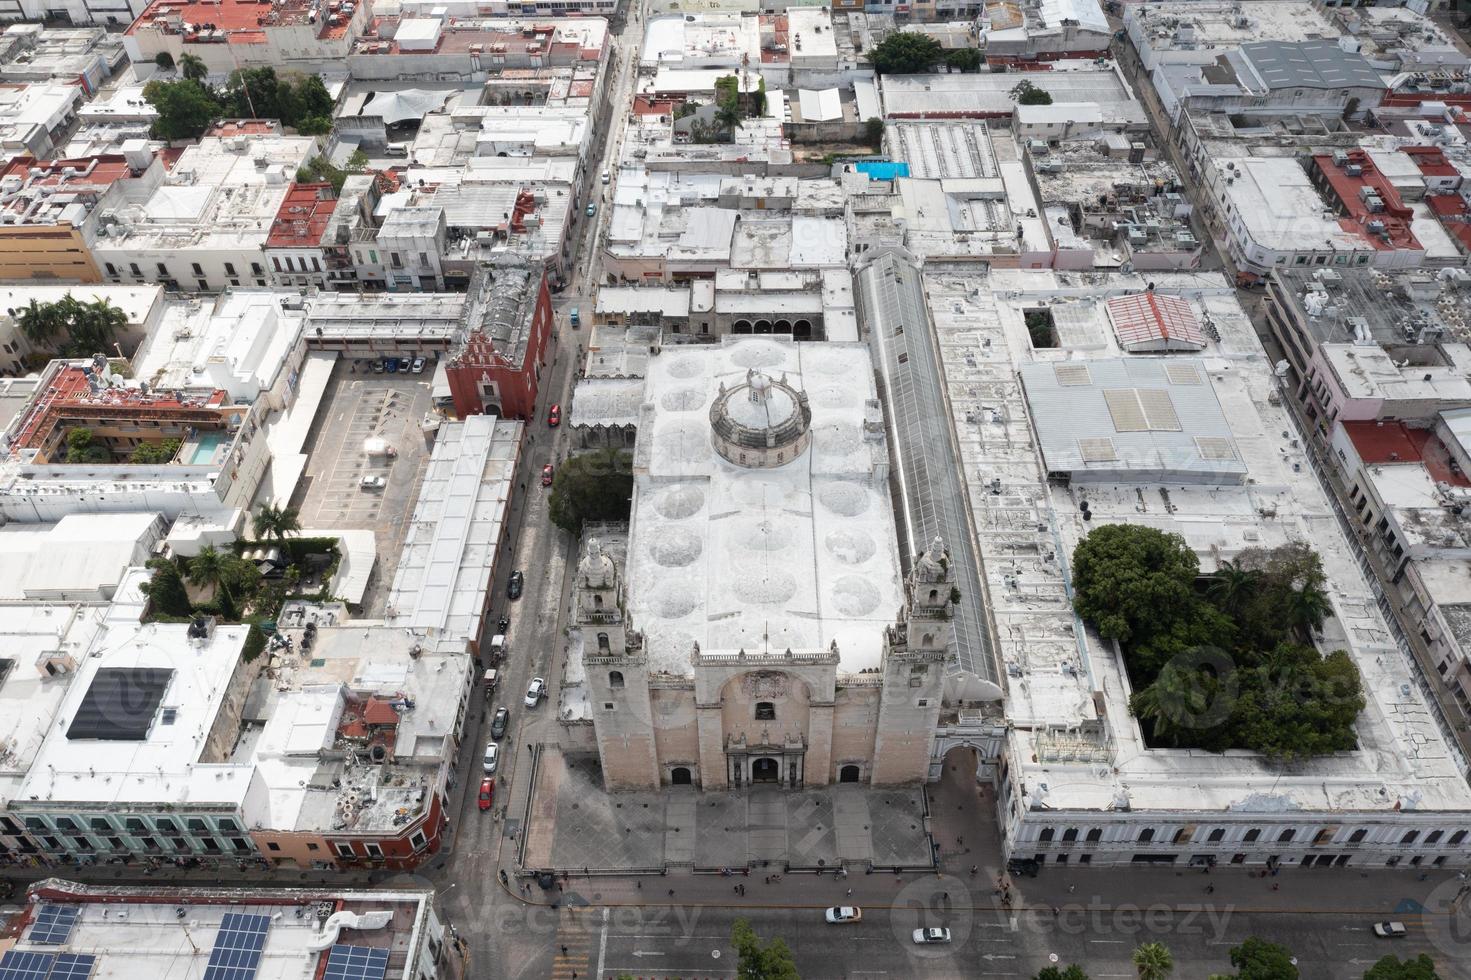 merida, mexique - 25 mai 2021 - la cathédrale san ildefonso de merida, la première cathédrale à être achevée sur le continent américain et la seule à être entièrement construite au XVIe siècle. photo